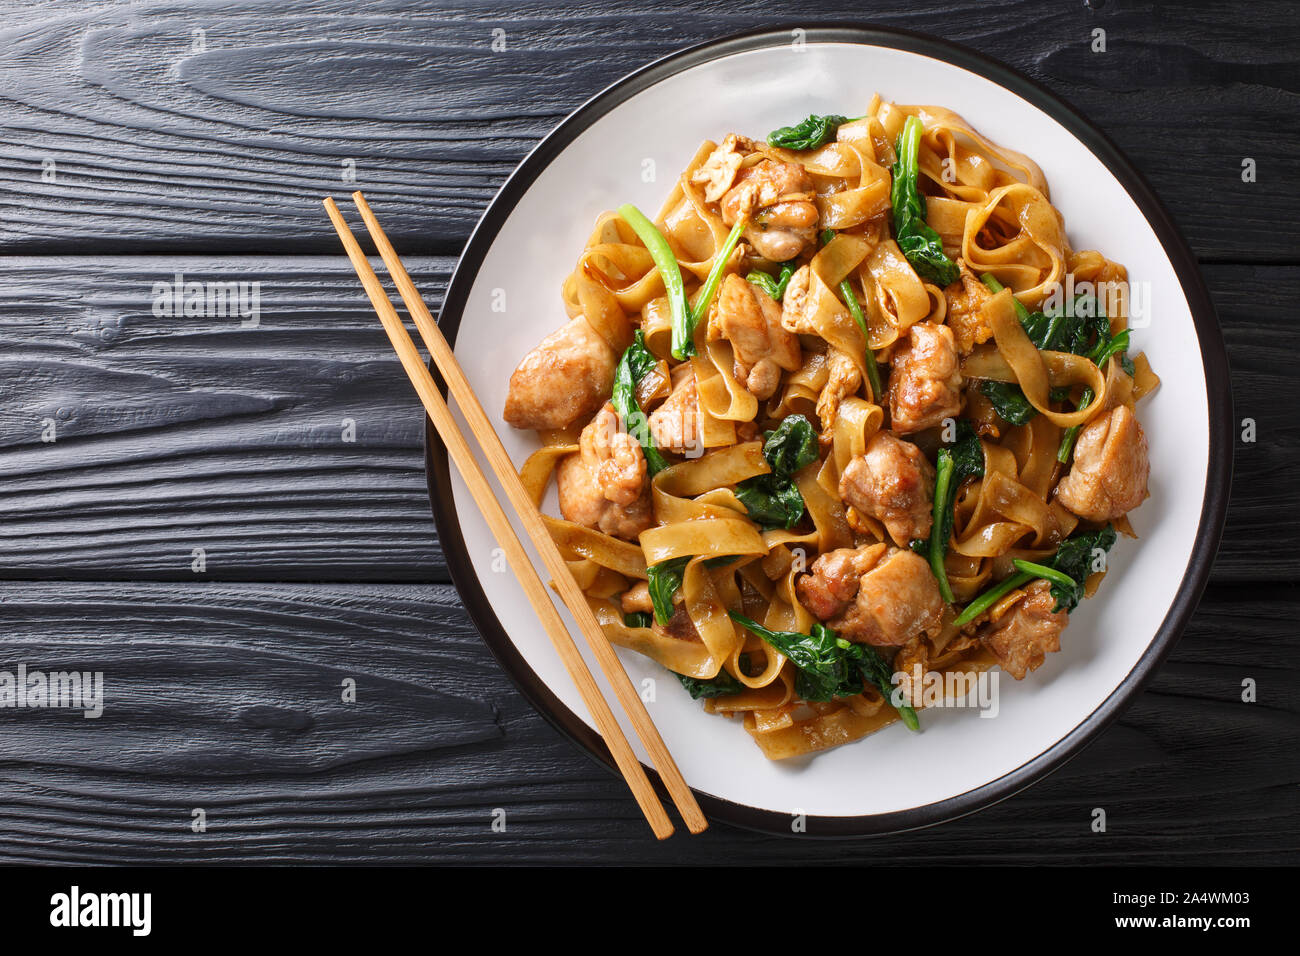 Les sautés de nouilles au poulet, brocoli chinois et l'oeuf sur une assiette sur la table. Voir Pad Thaï ew. Haut horizontale Vue de dessus Banque D'Images